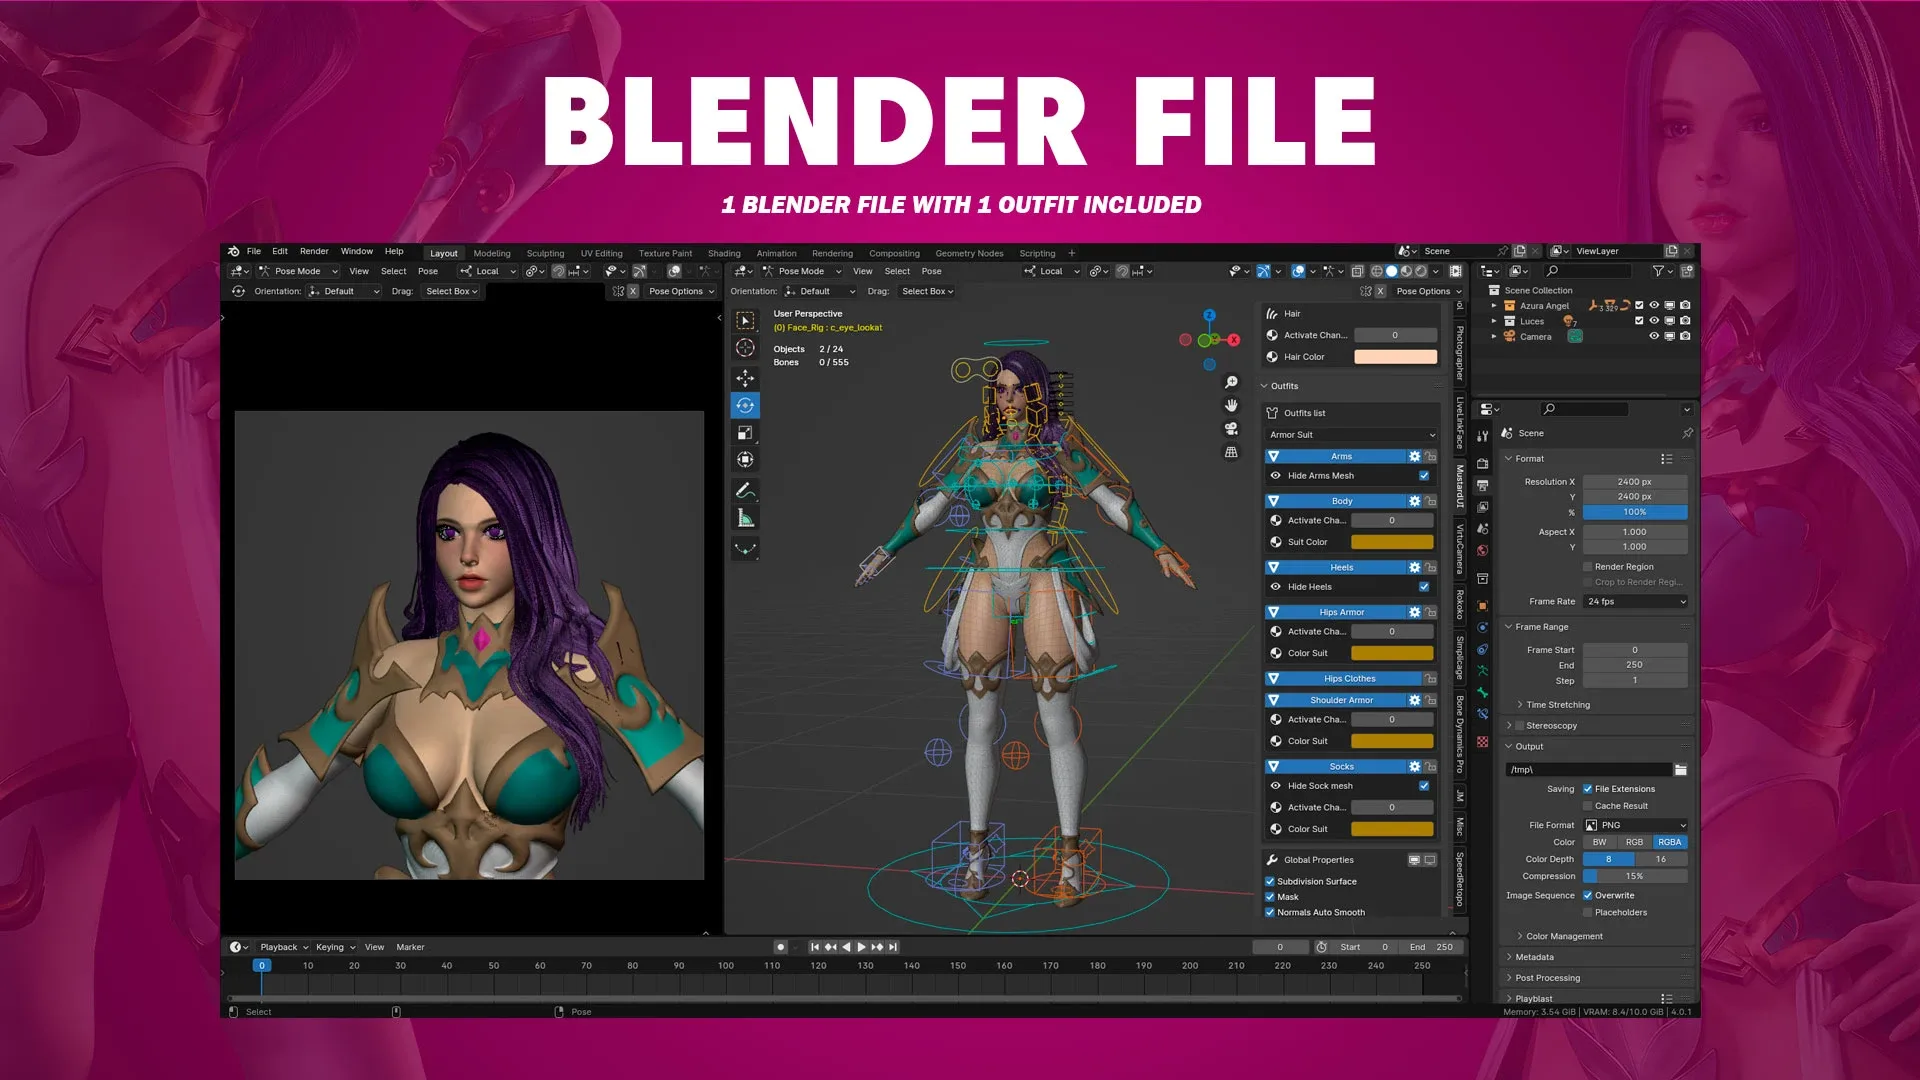 Azura - Female Warrior Character - Blender 3D Model - UE4 - Game Ready